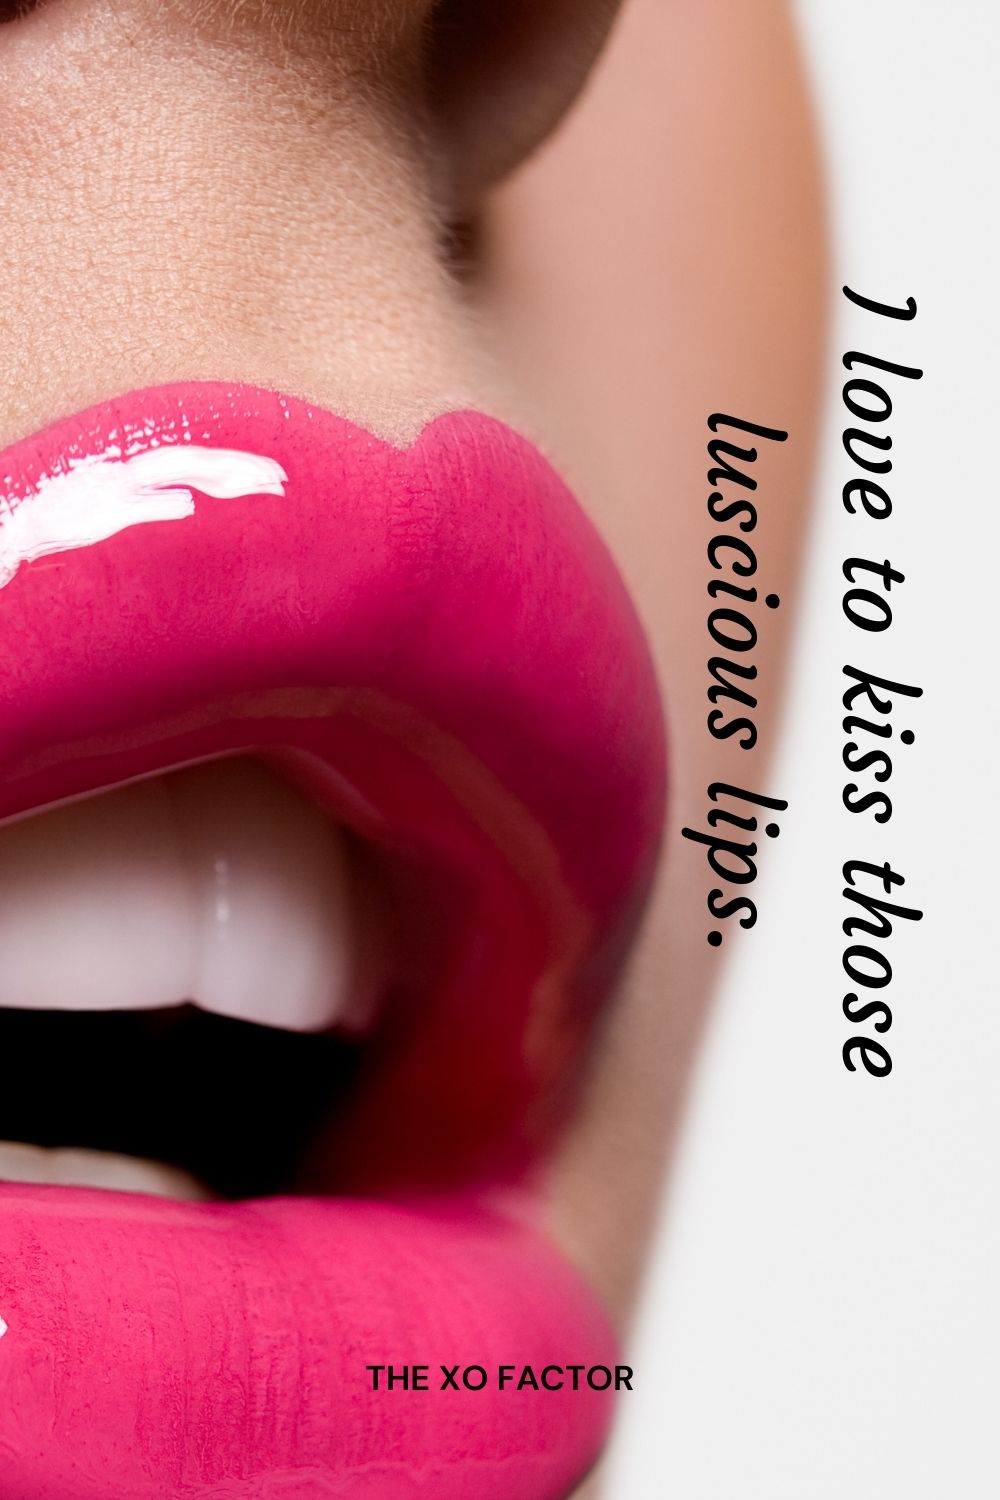 I love to kiss those luscious lips.